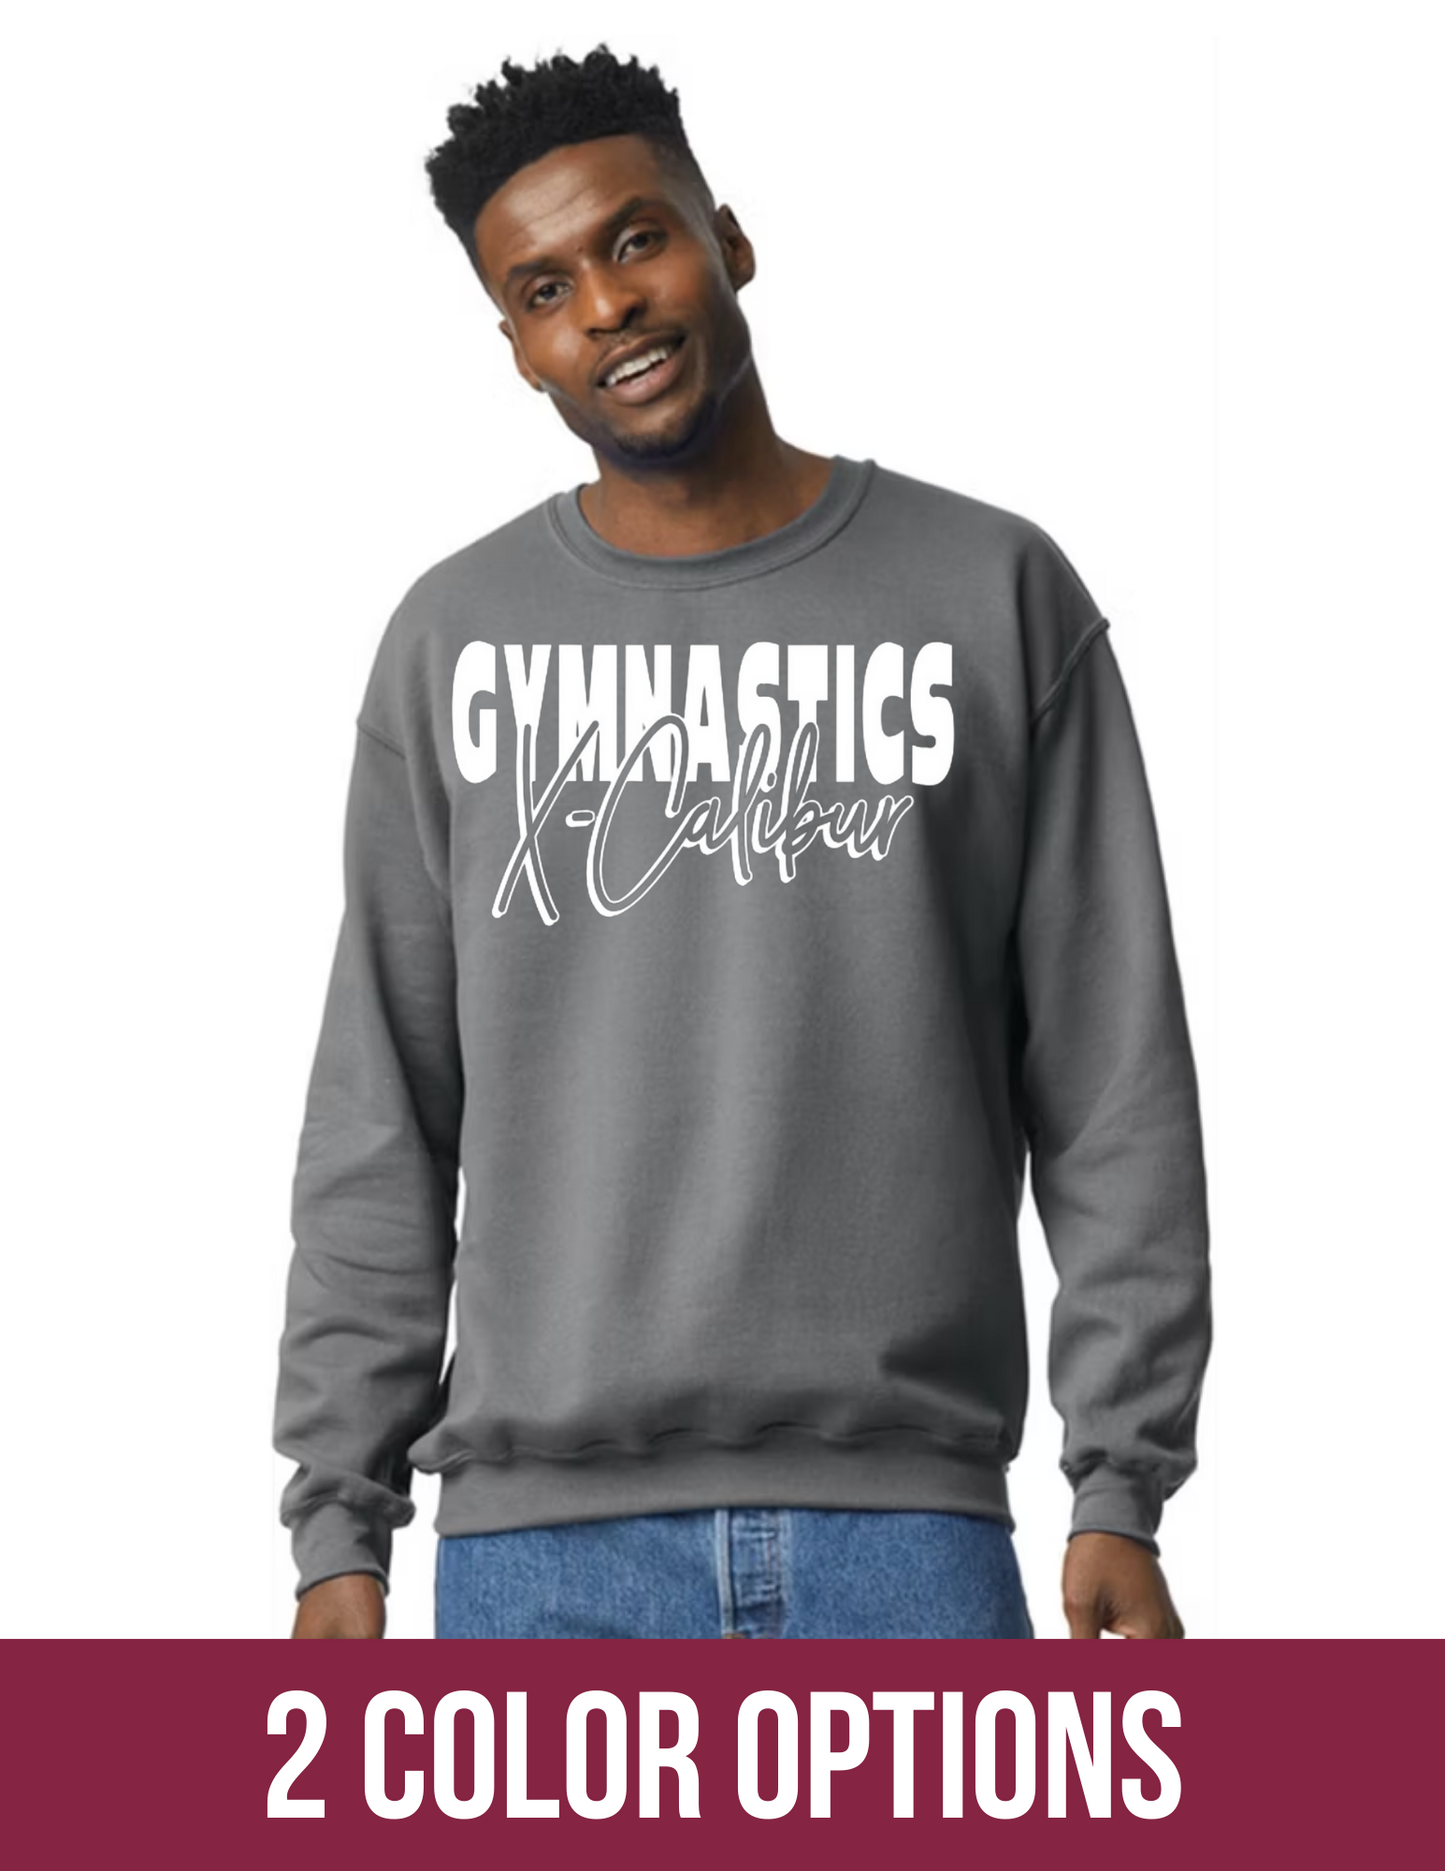 Gymnastics X-Calibur Sweatshirt-2 color options